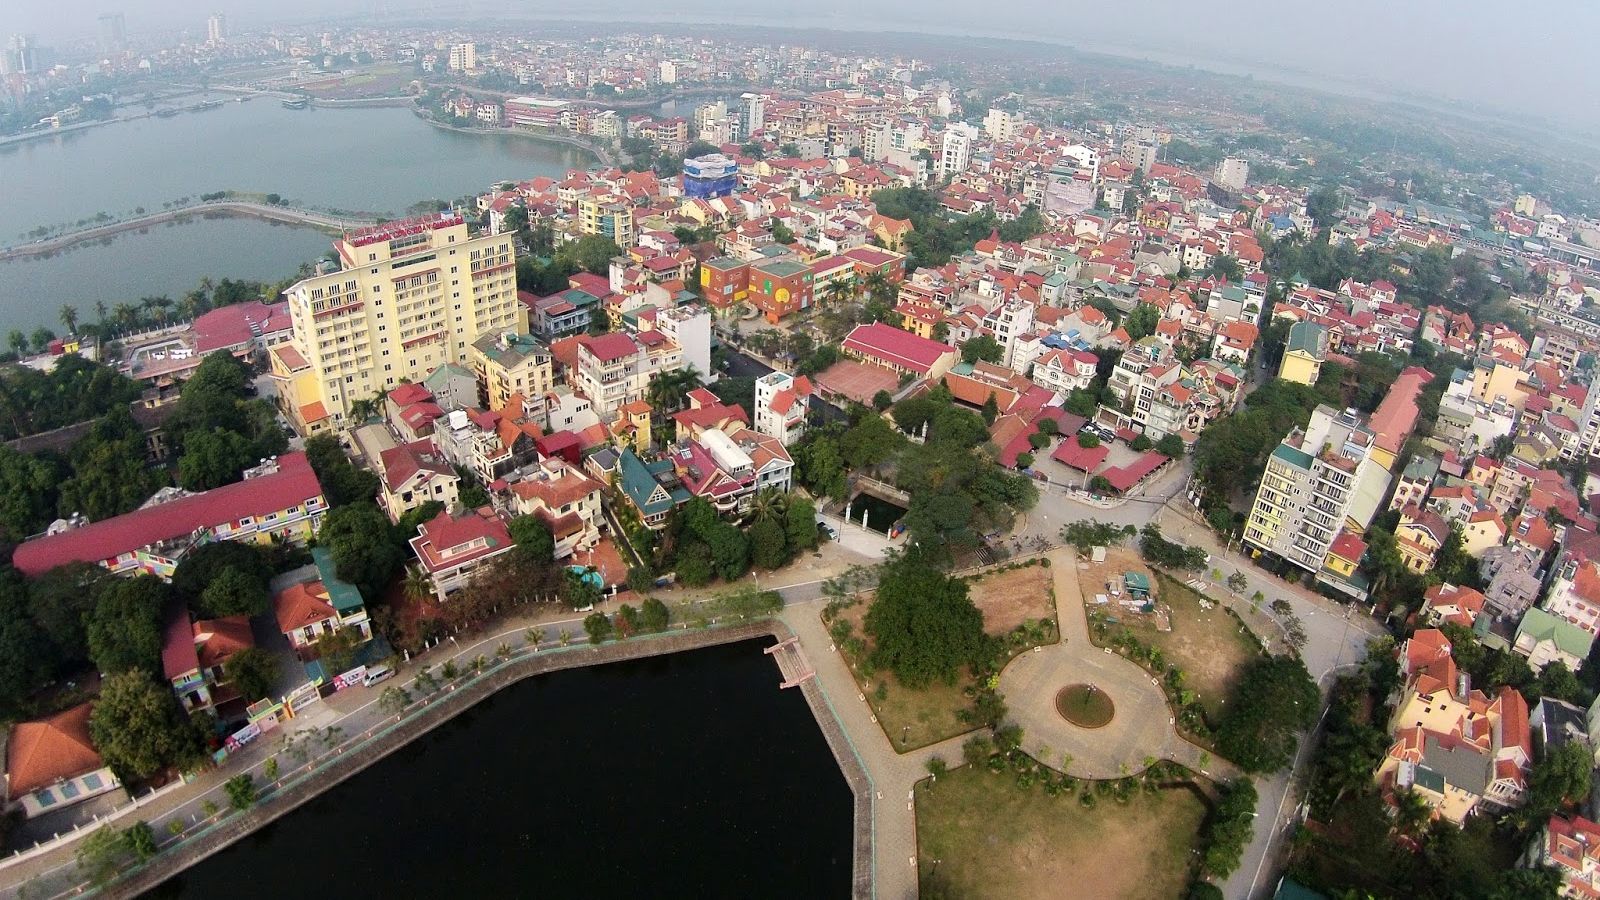 Cập nhật bảng giá đất nhà nước ban hành phường Quảng An Tây Hồ mới nhất